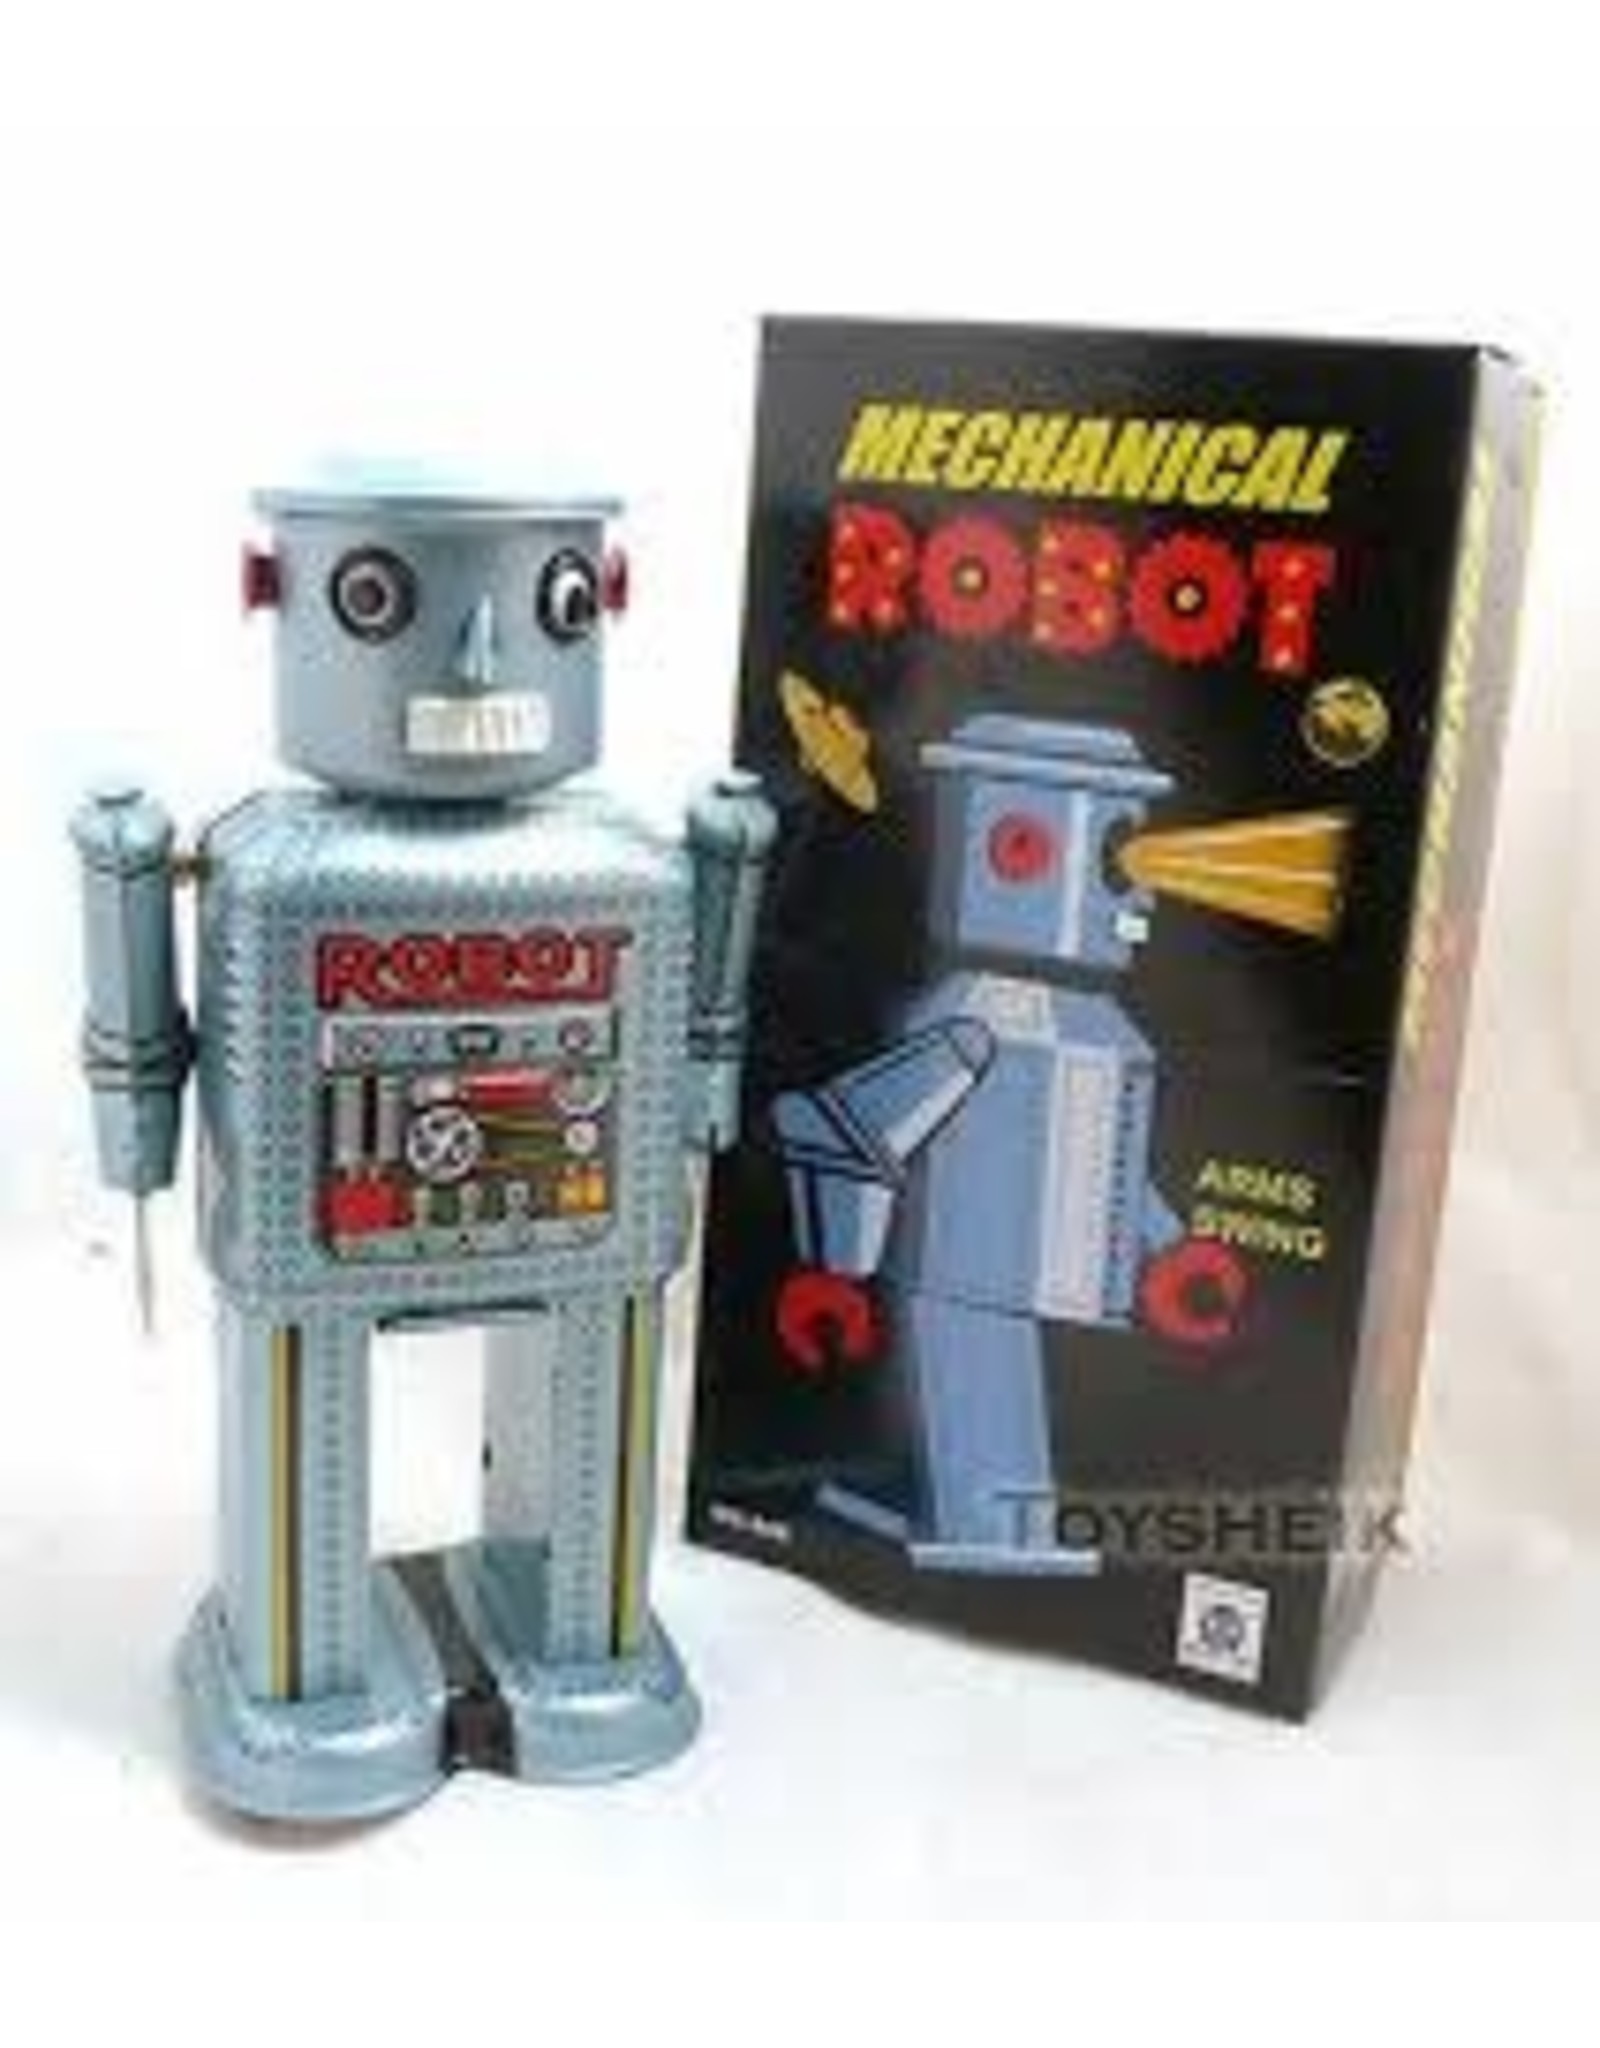 Mechanical Robot